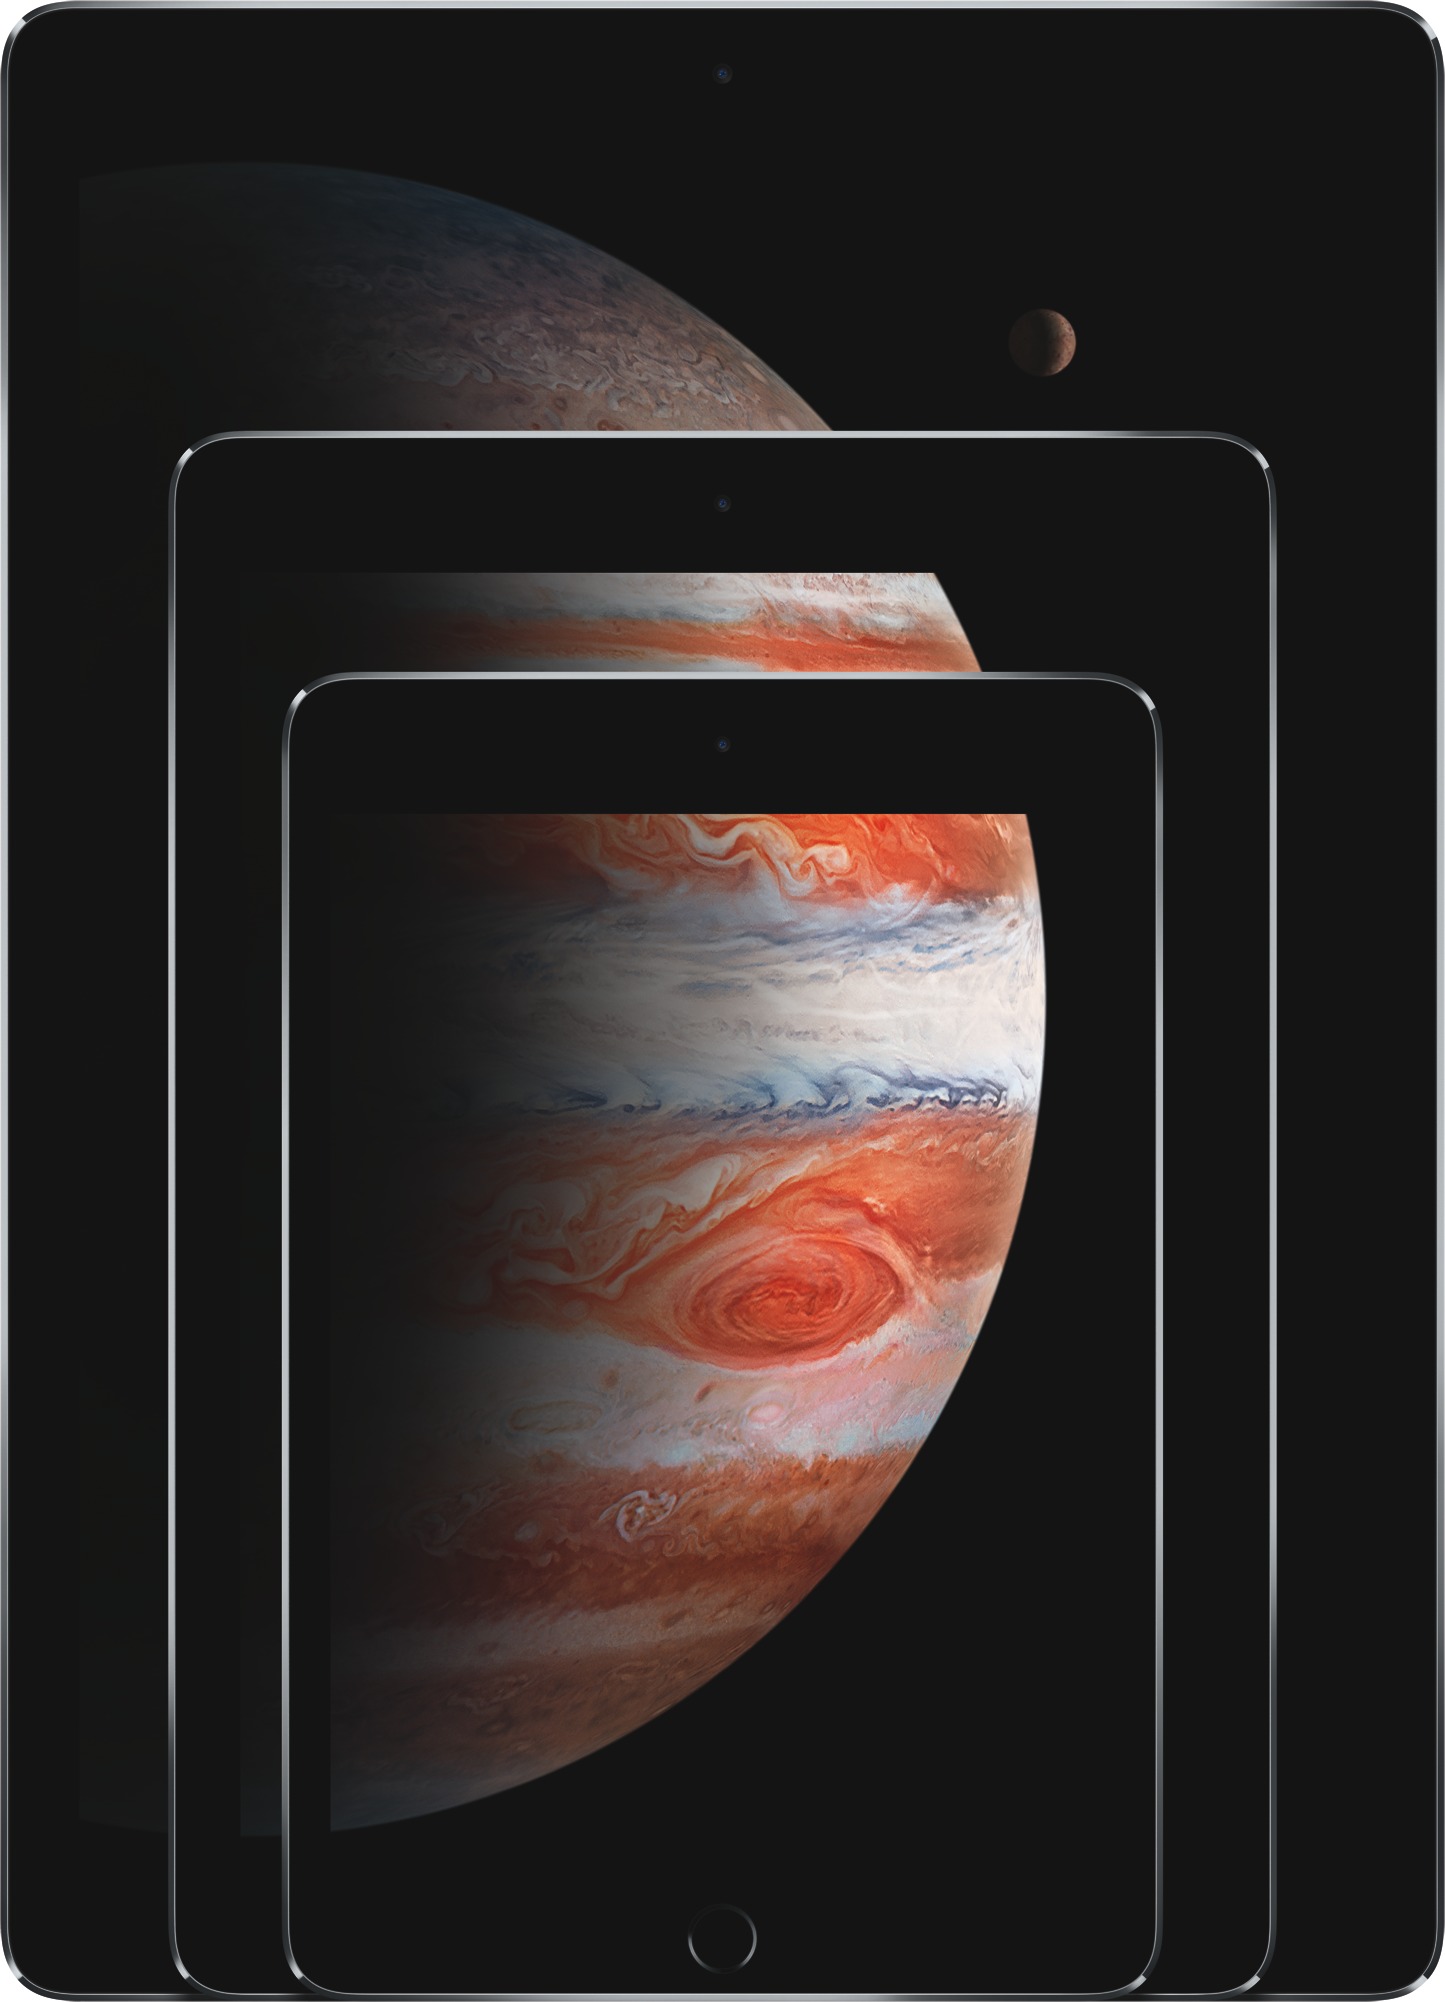 實際尺寸圖像 比較 iPad 機種 。